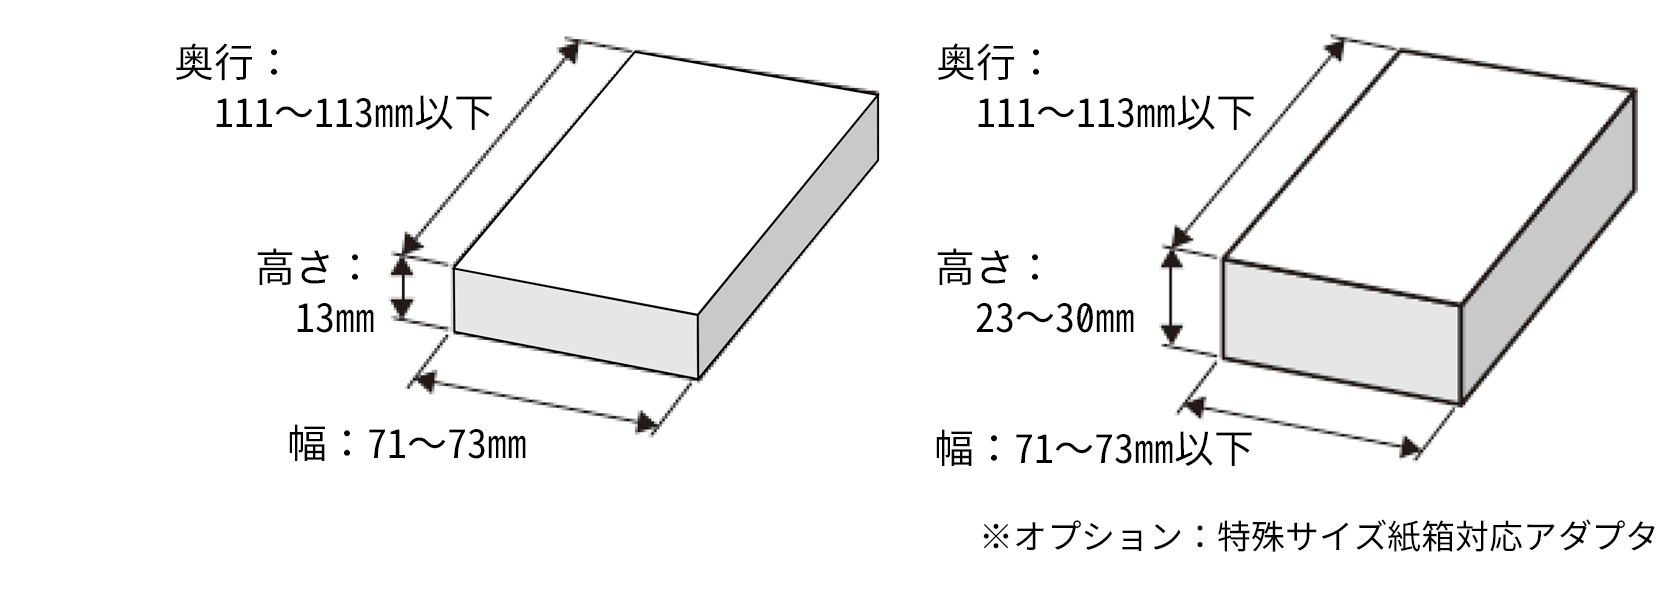 ・質量：9.5～47.5g以下/個（紙箱含む）奥行：111～113㎜以下 高さ：13㎜ 幅：71～73㎜　・質量：14～195ｇ以下/個（紙箱含む）奥行：111～113㎜以下 高さ：23～30㎜ 幅：71～73㎜以下 ※オプション：特殊サイズ紙箱対応アダプタ 